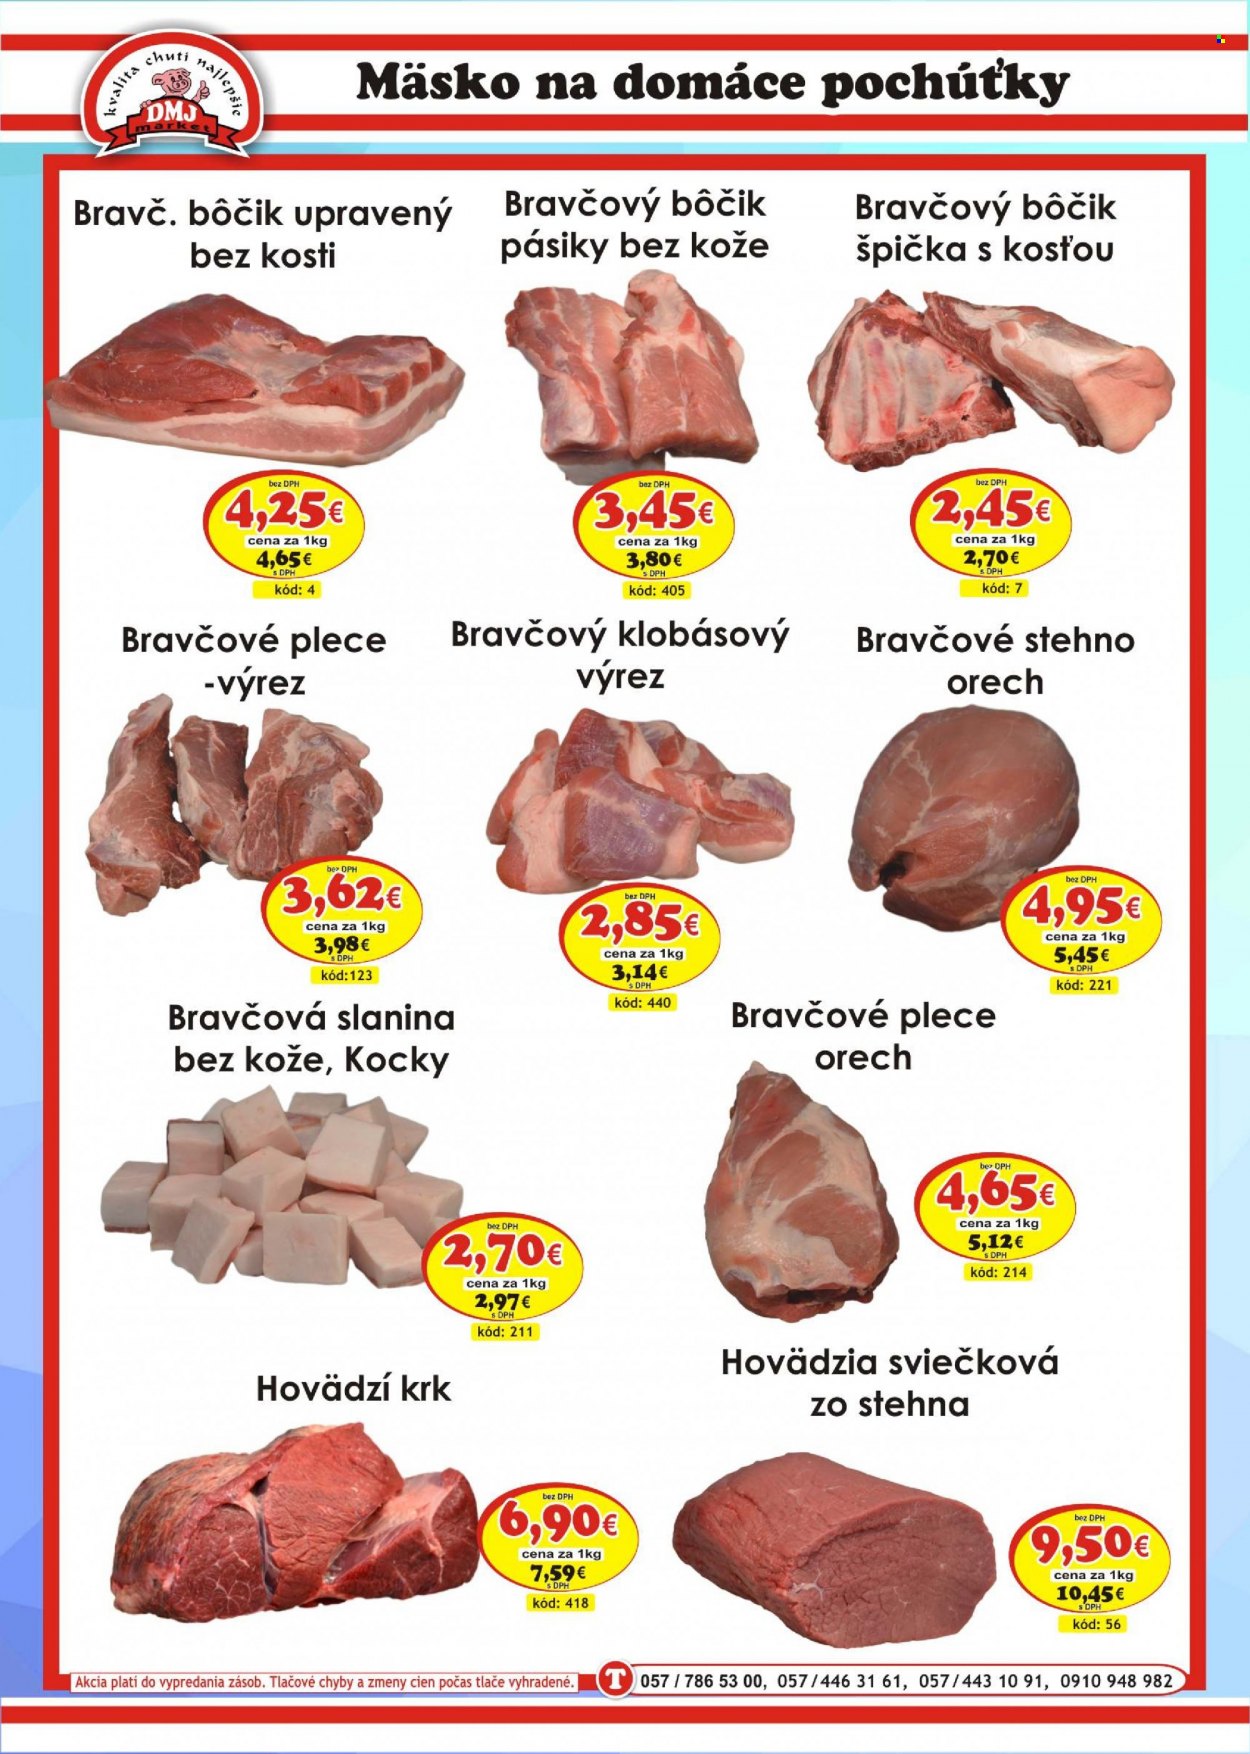 thumbnail - Leták DMJ market - Produkty v akcii - hovädzie mäso, hovädzia sviečkovica, hovädzí krk, bravčové pliecko, bravčové stehno, bravčový bok, slanina, bravčová slanina, Cien. Strana 2.